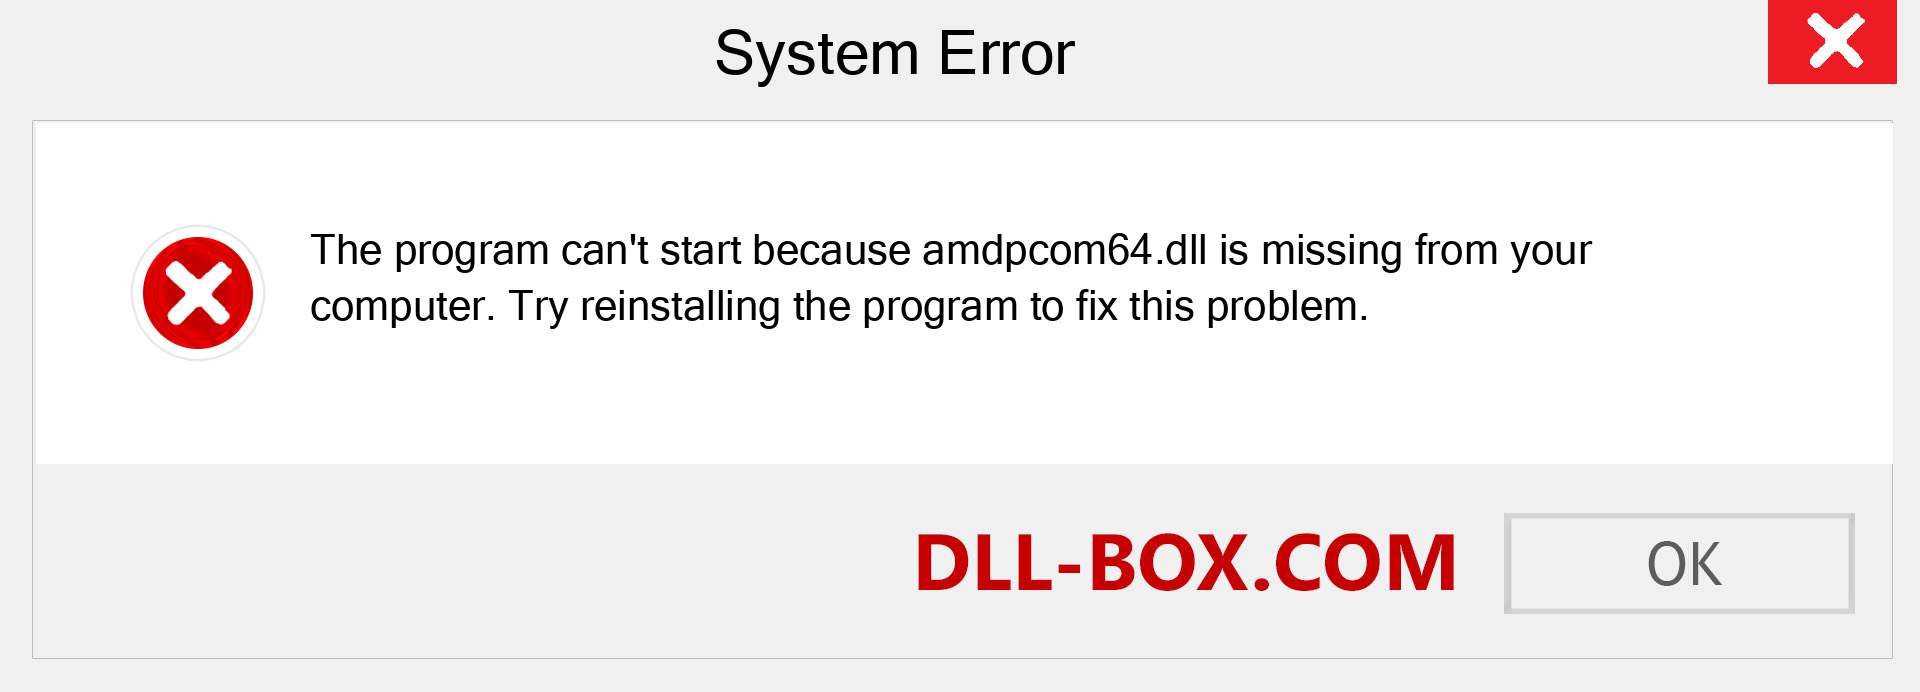  amdpcom64.dll file is missing?. Download for Windows 7, 8, 10 - Fix  amdpcom64 dll Missing Error on Windows, photos, images